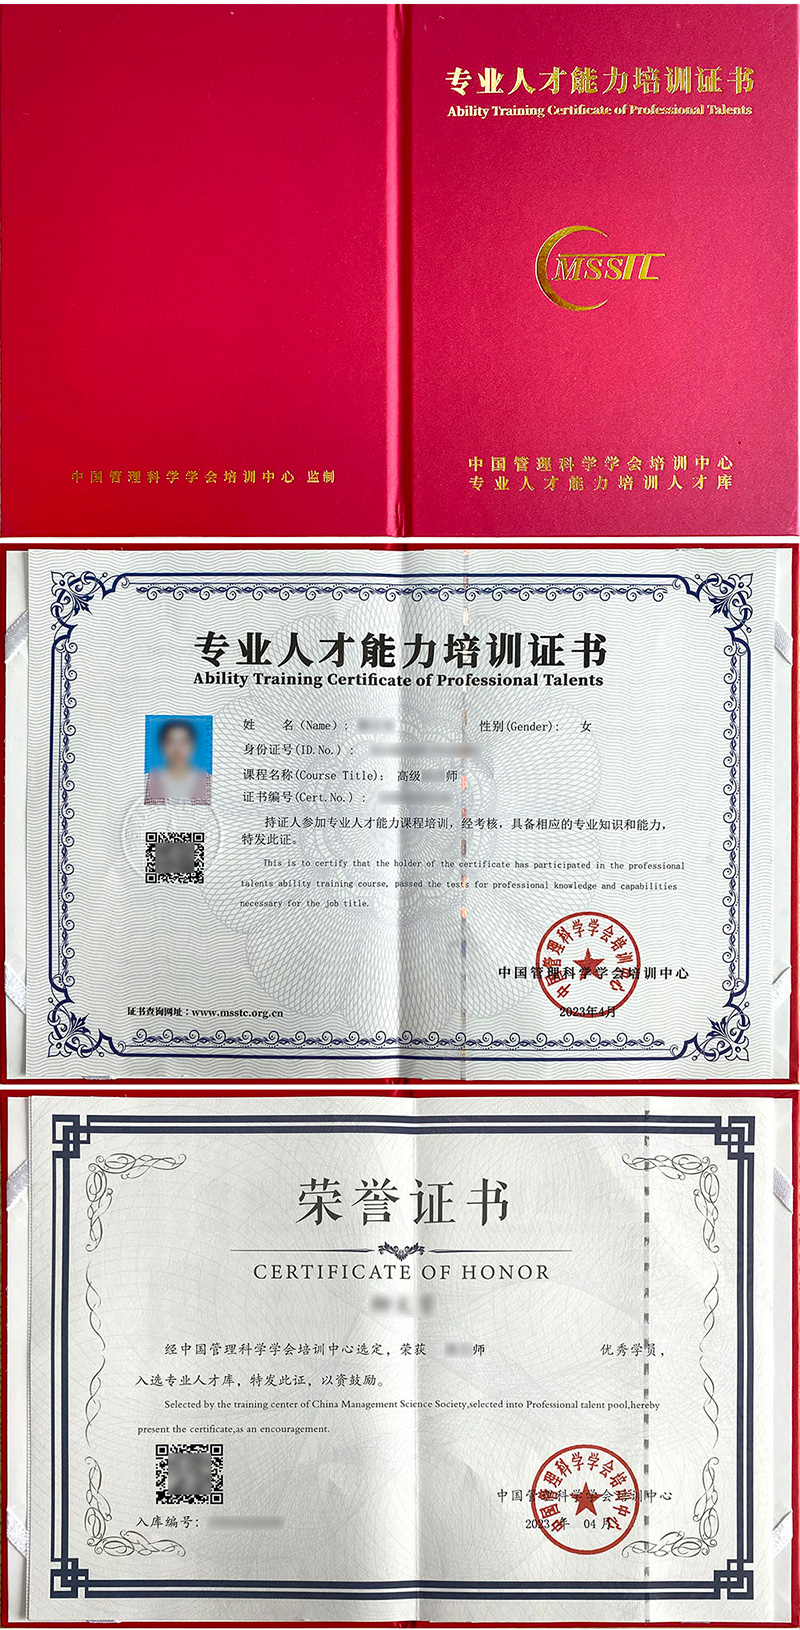 中国管理科学学会培训中心 专业人才能力培训证书 口腔保健师证证书样本